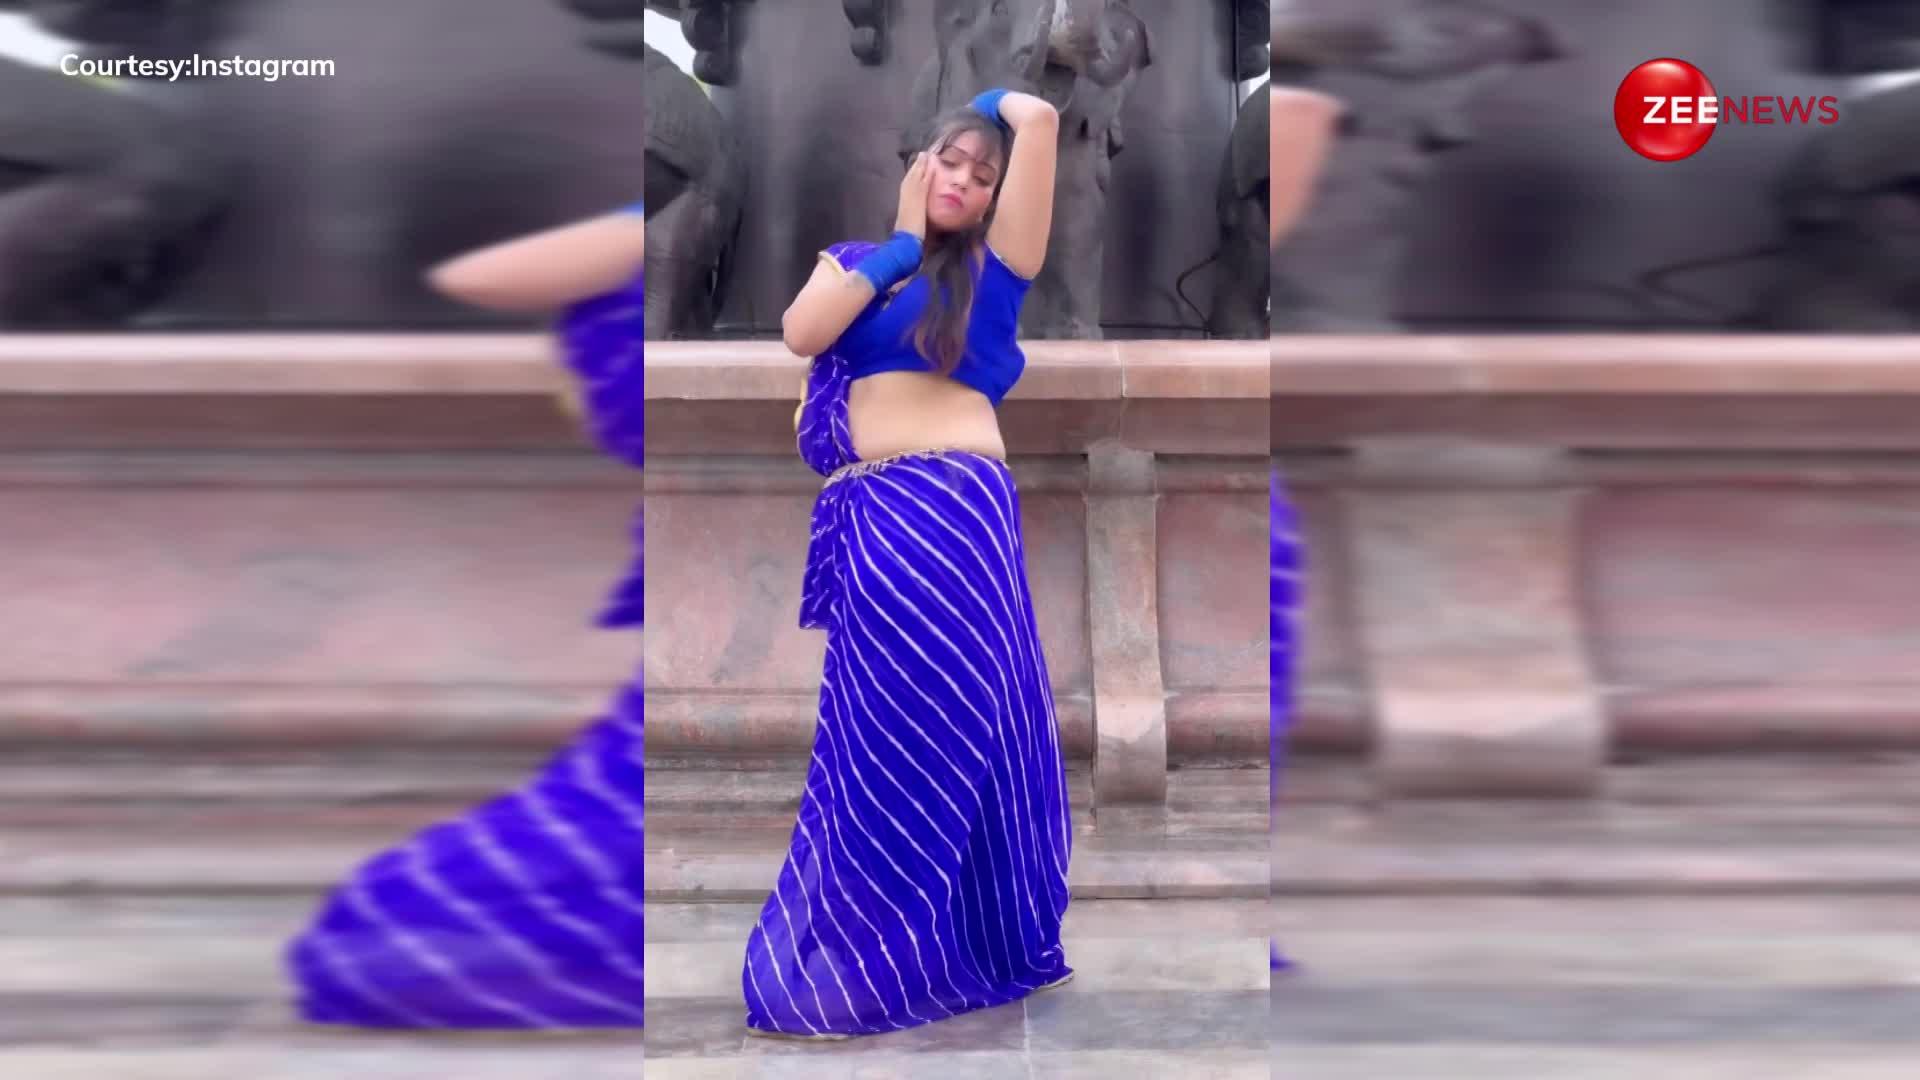 Bhabhi Dance: भाभी ने दिखाया ब्लू साड़ी में धमाकेदार डांस, देखकर सब रह गए हैरान